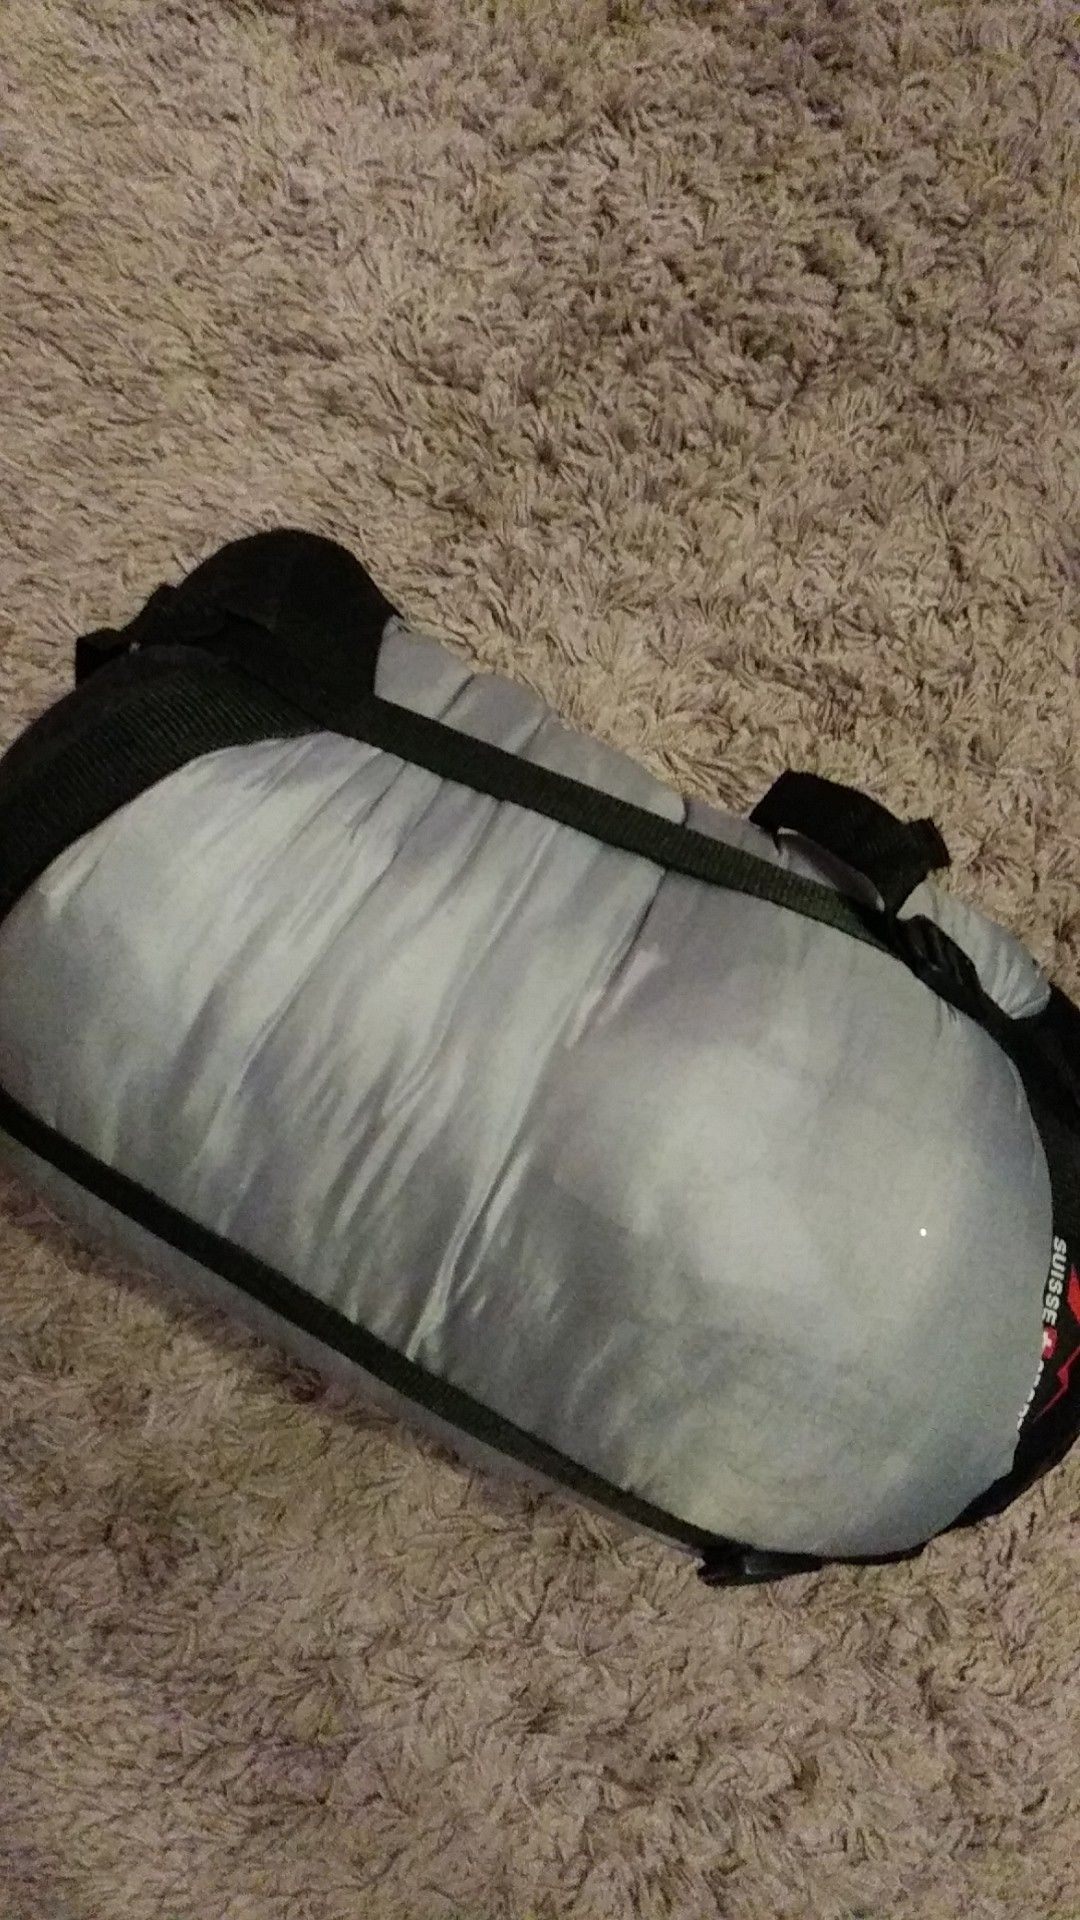 Suisse Sport compact sleeping bag